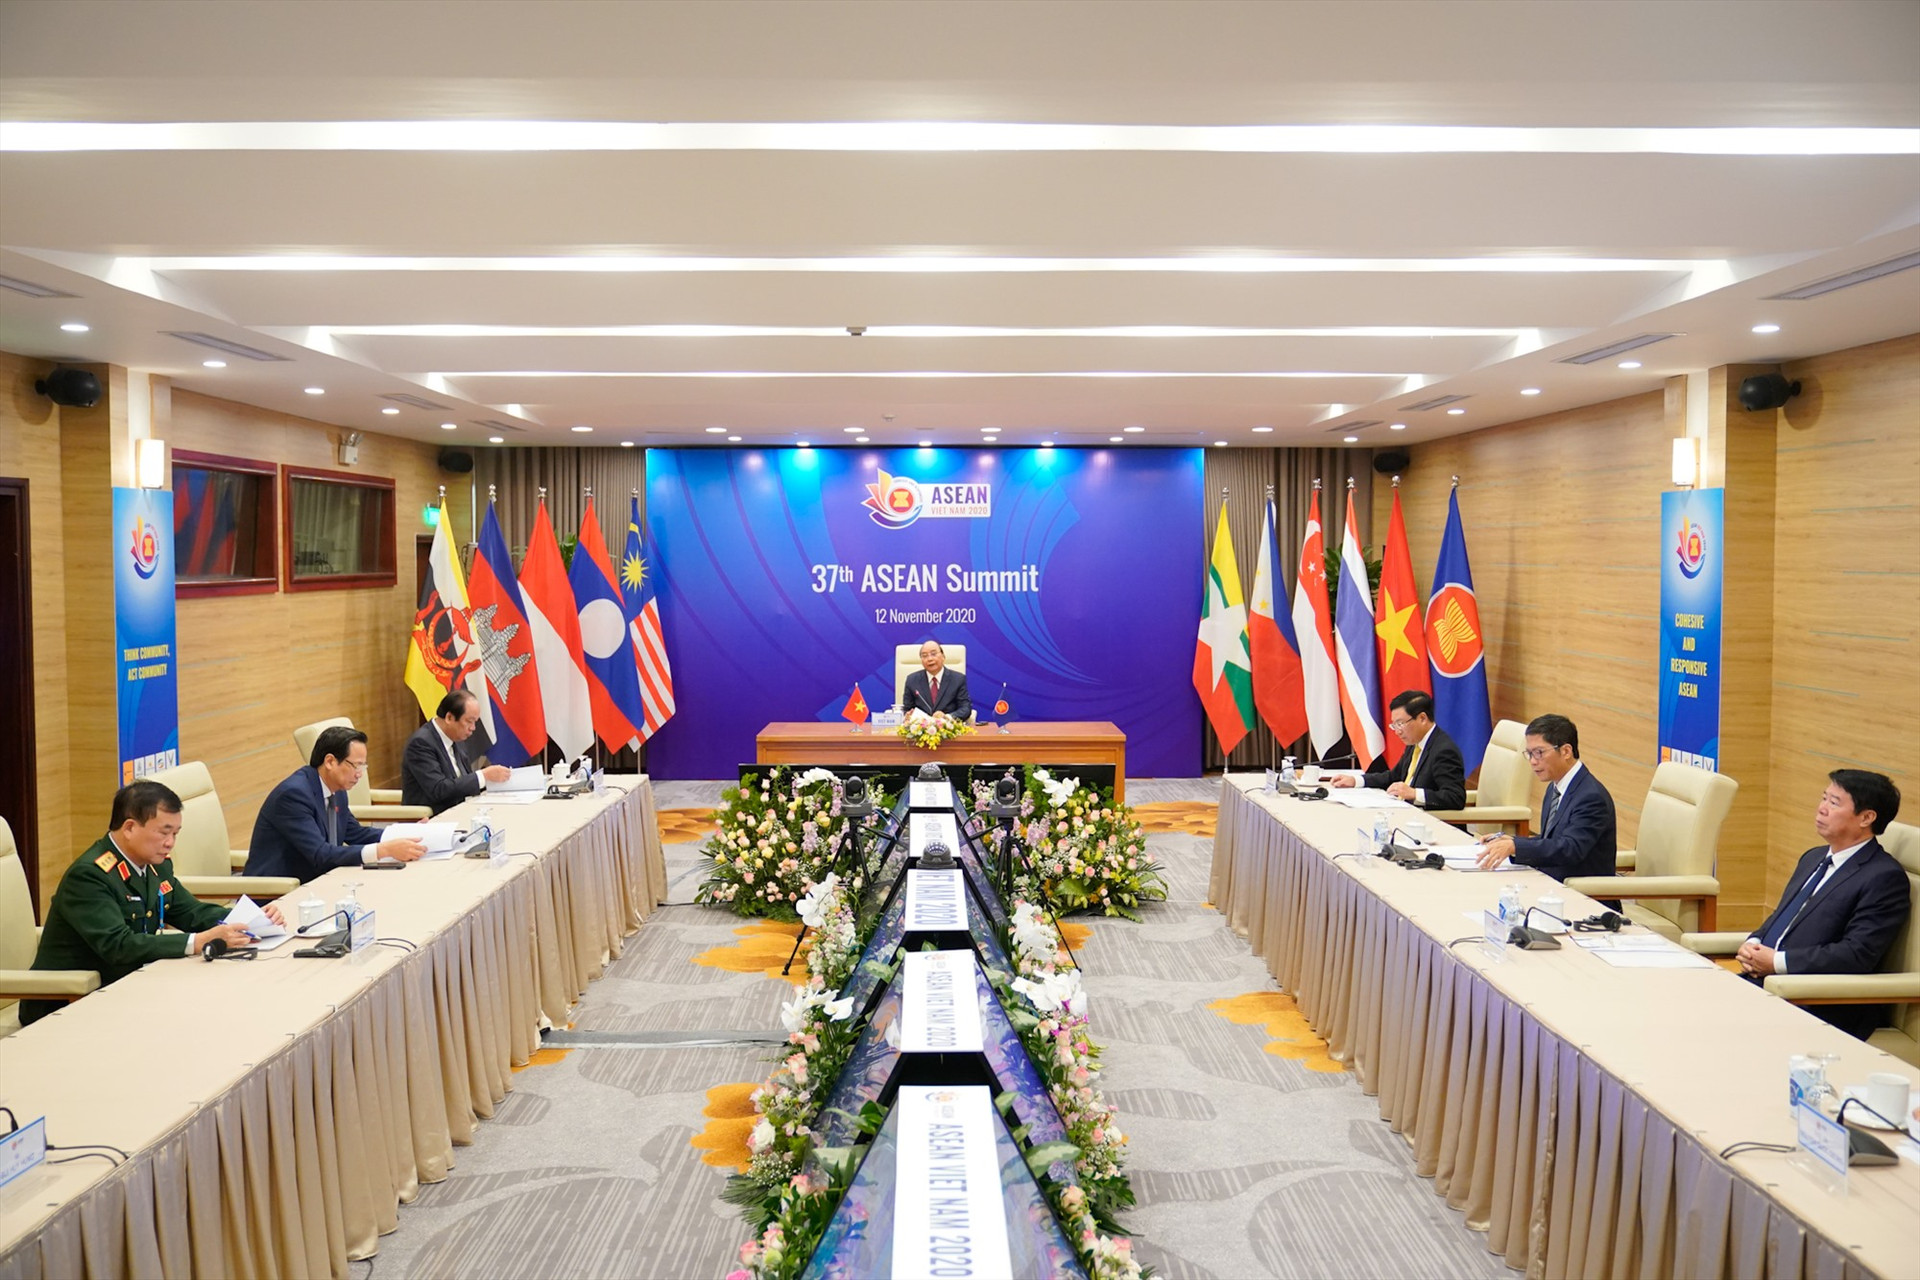 Phiên toàn thể Hội nghị Cấp cao ASEAN 37. Ảnh: VGP/Quang Hiếu